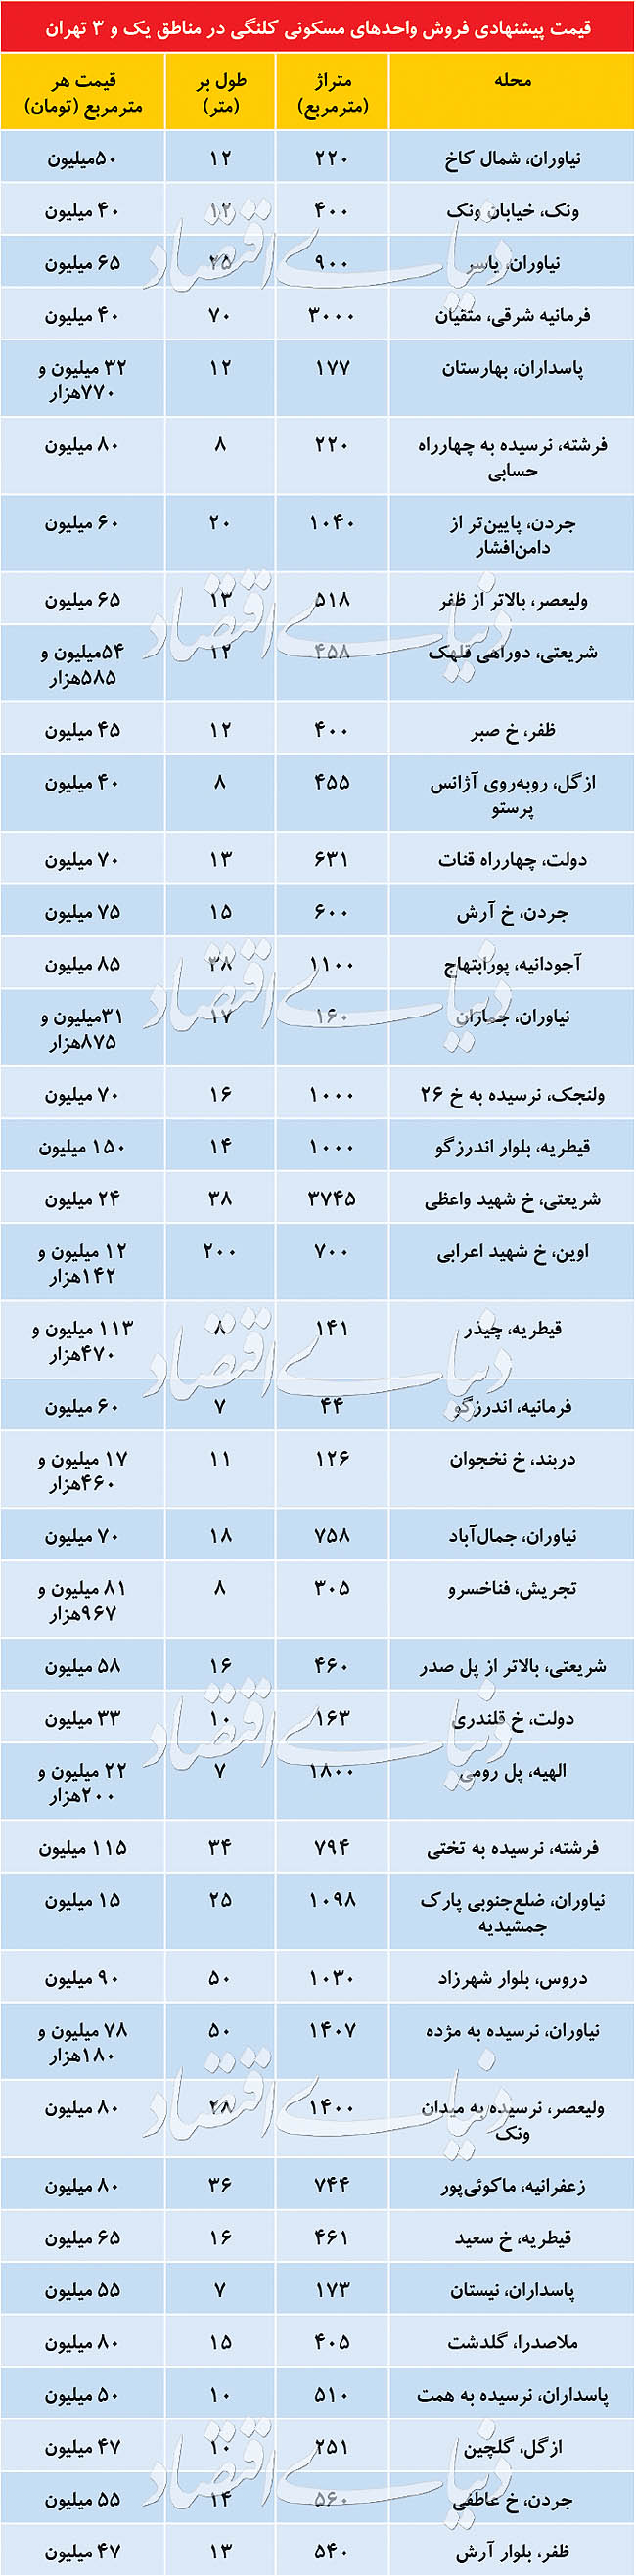 قیمت خانه های کلنگی در شمال تهران چند؟/جدول